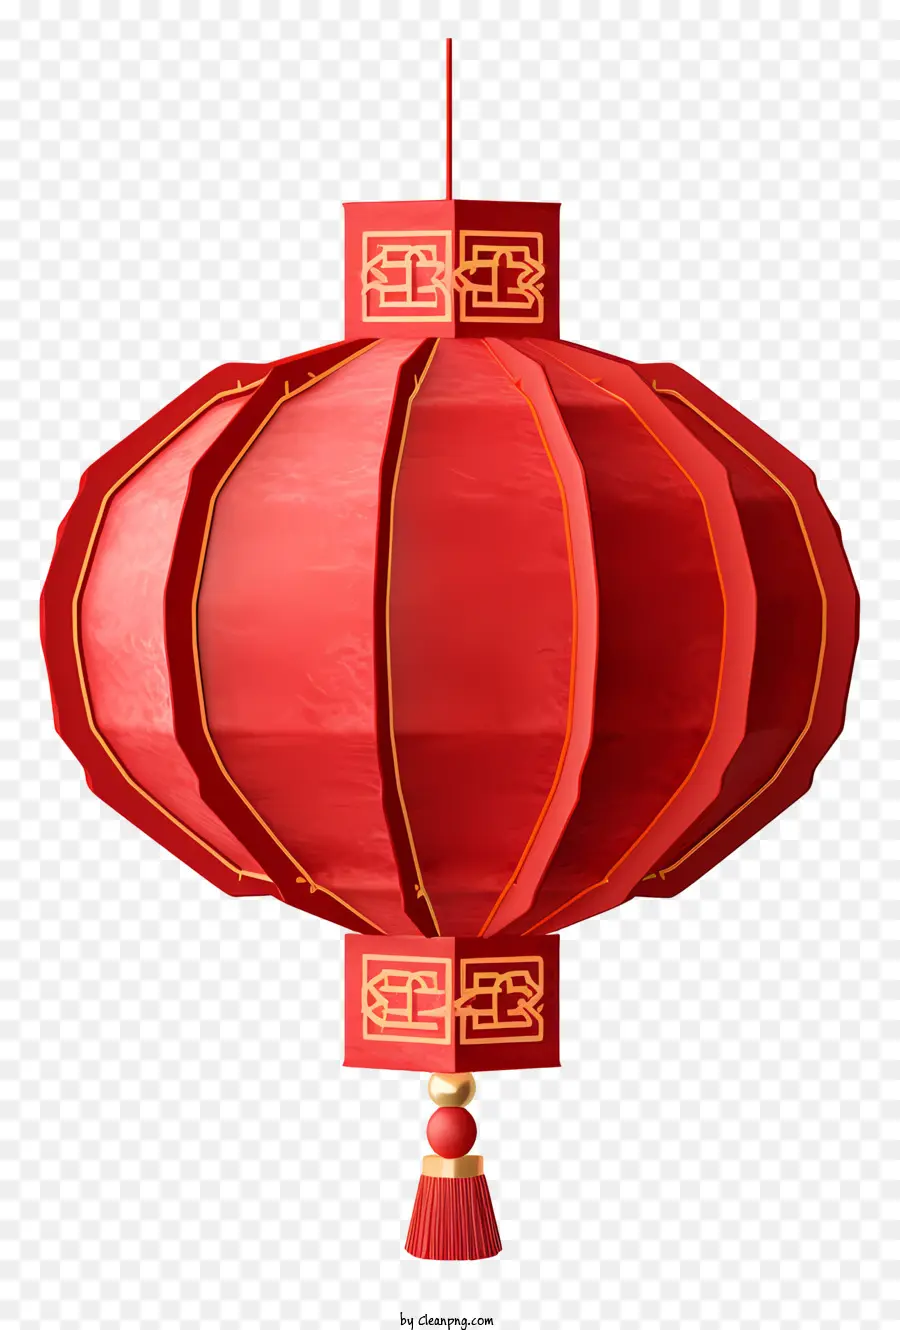 Rotlaterne asiatische Dekoration traditioneller Laternengoldakzente Quasten Quasten - Traditionelle asiatische Laterne mit roten und goldenen Akzenten